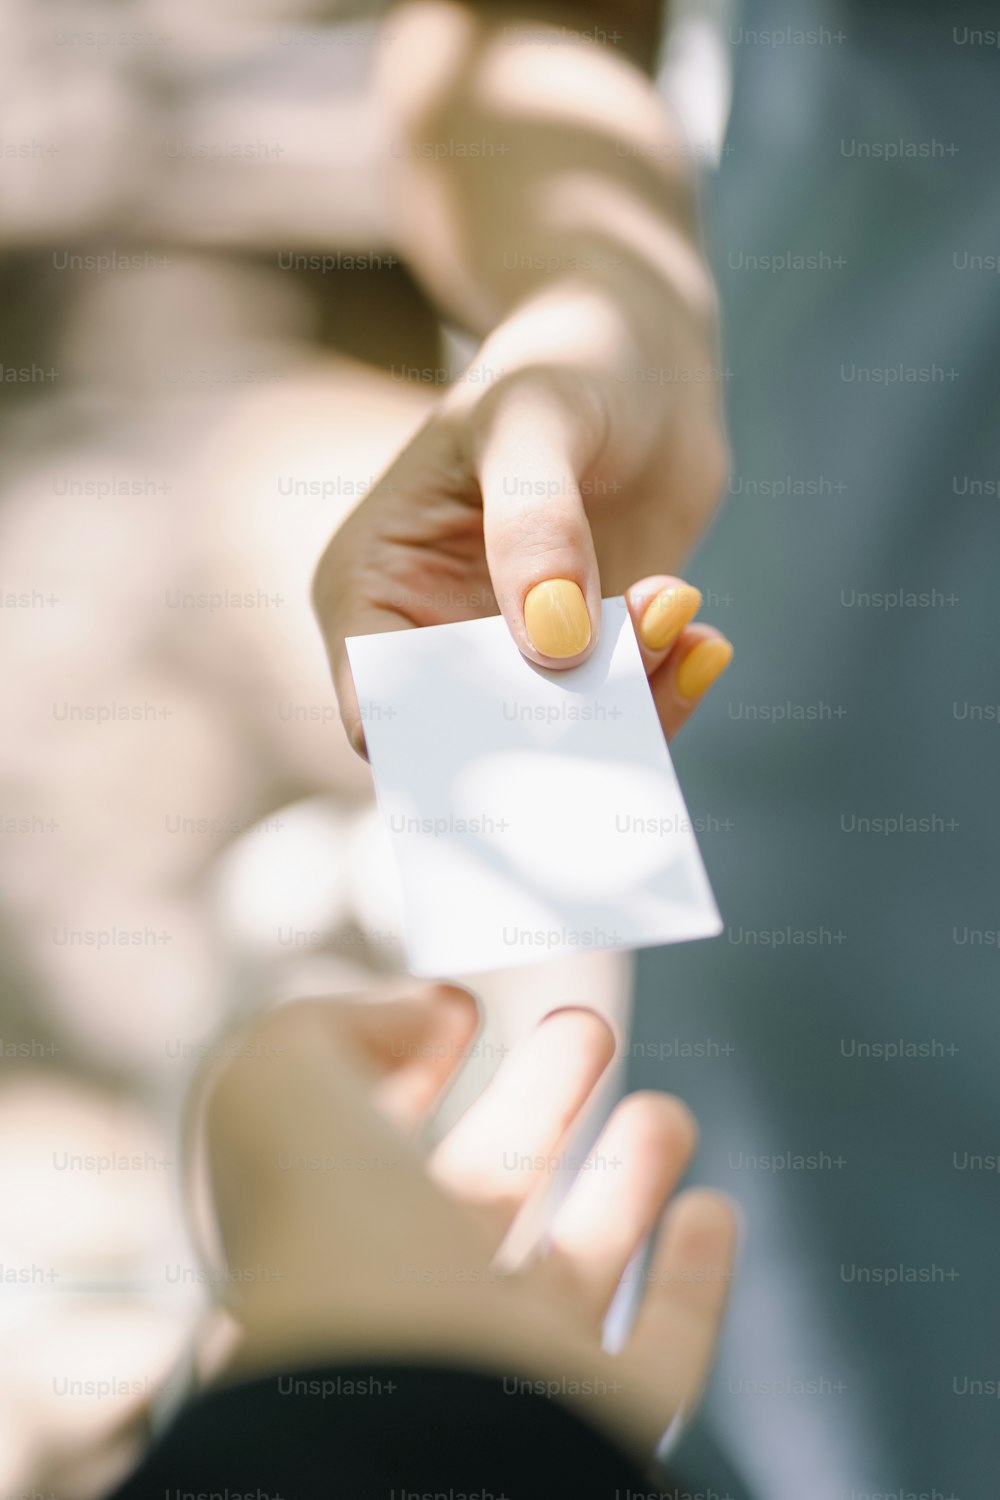 una persona sosteniendo un pedazo de papel en la mano